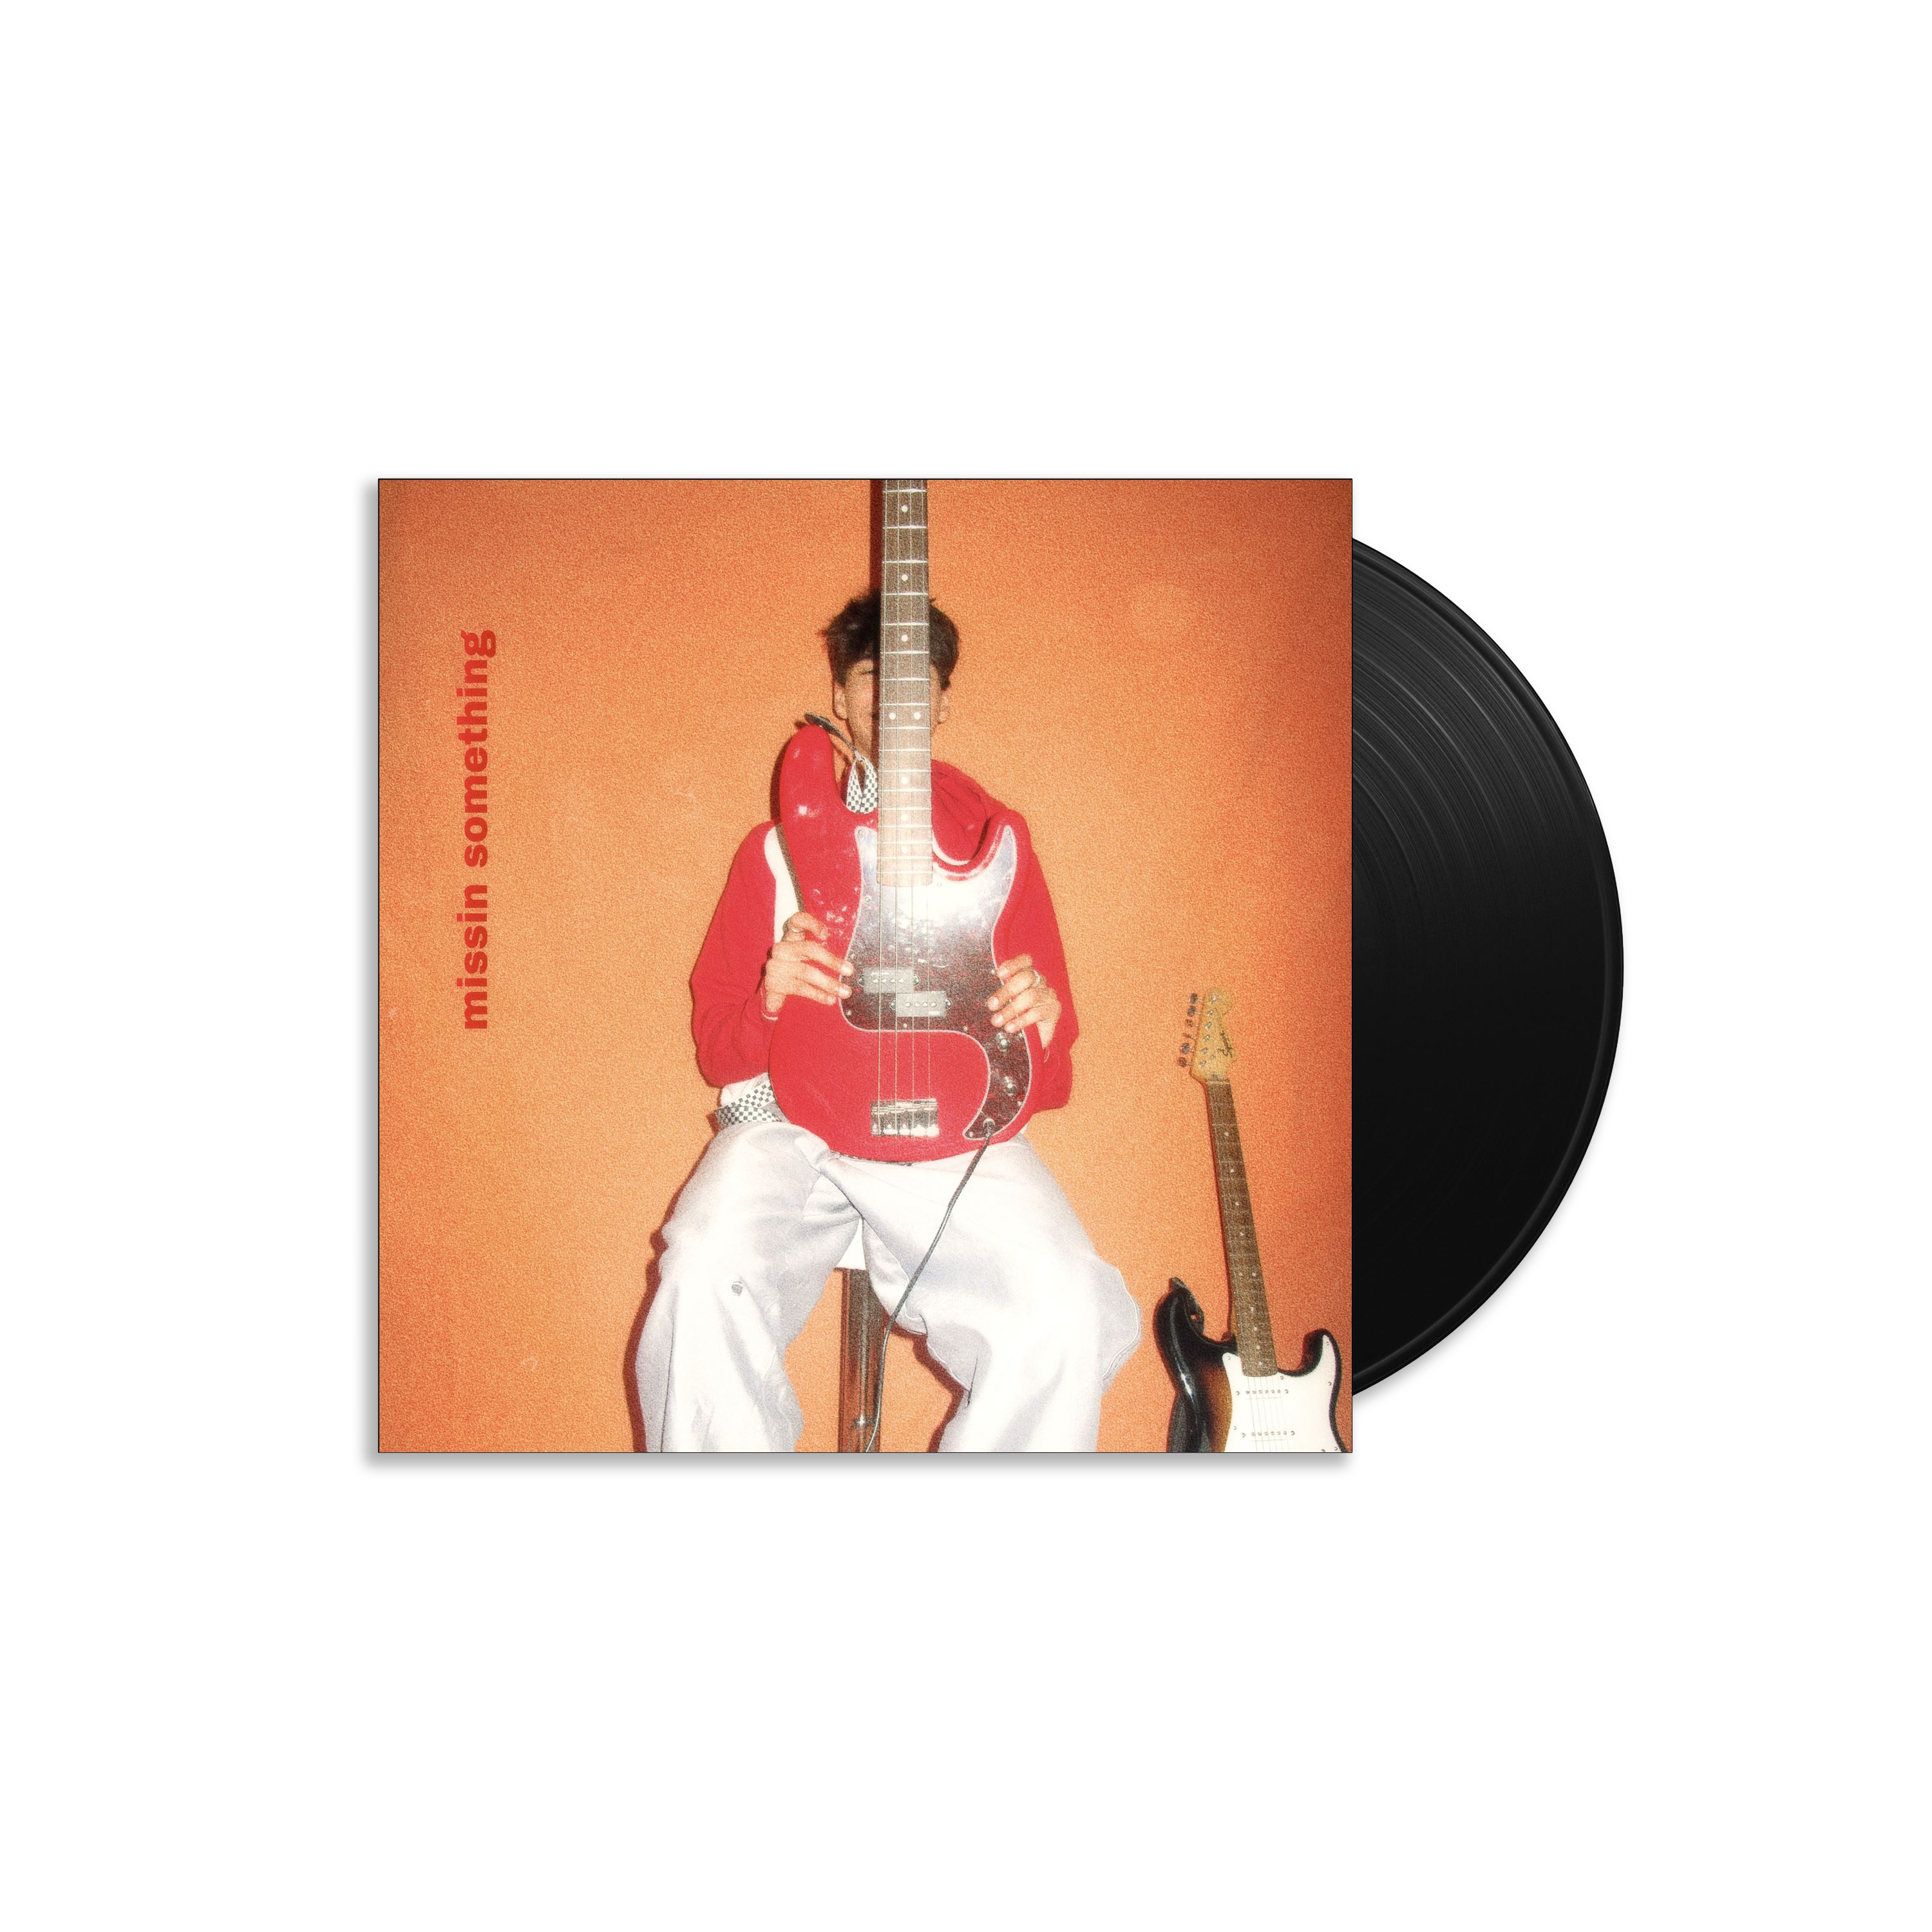 Zach Templar - missin something: Signed Vinyl 7" Single